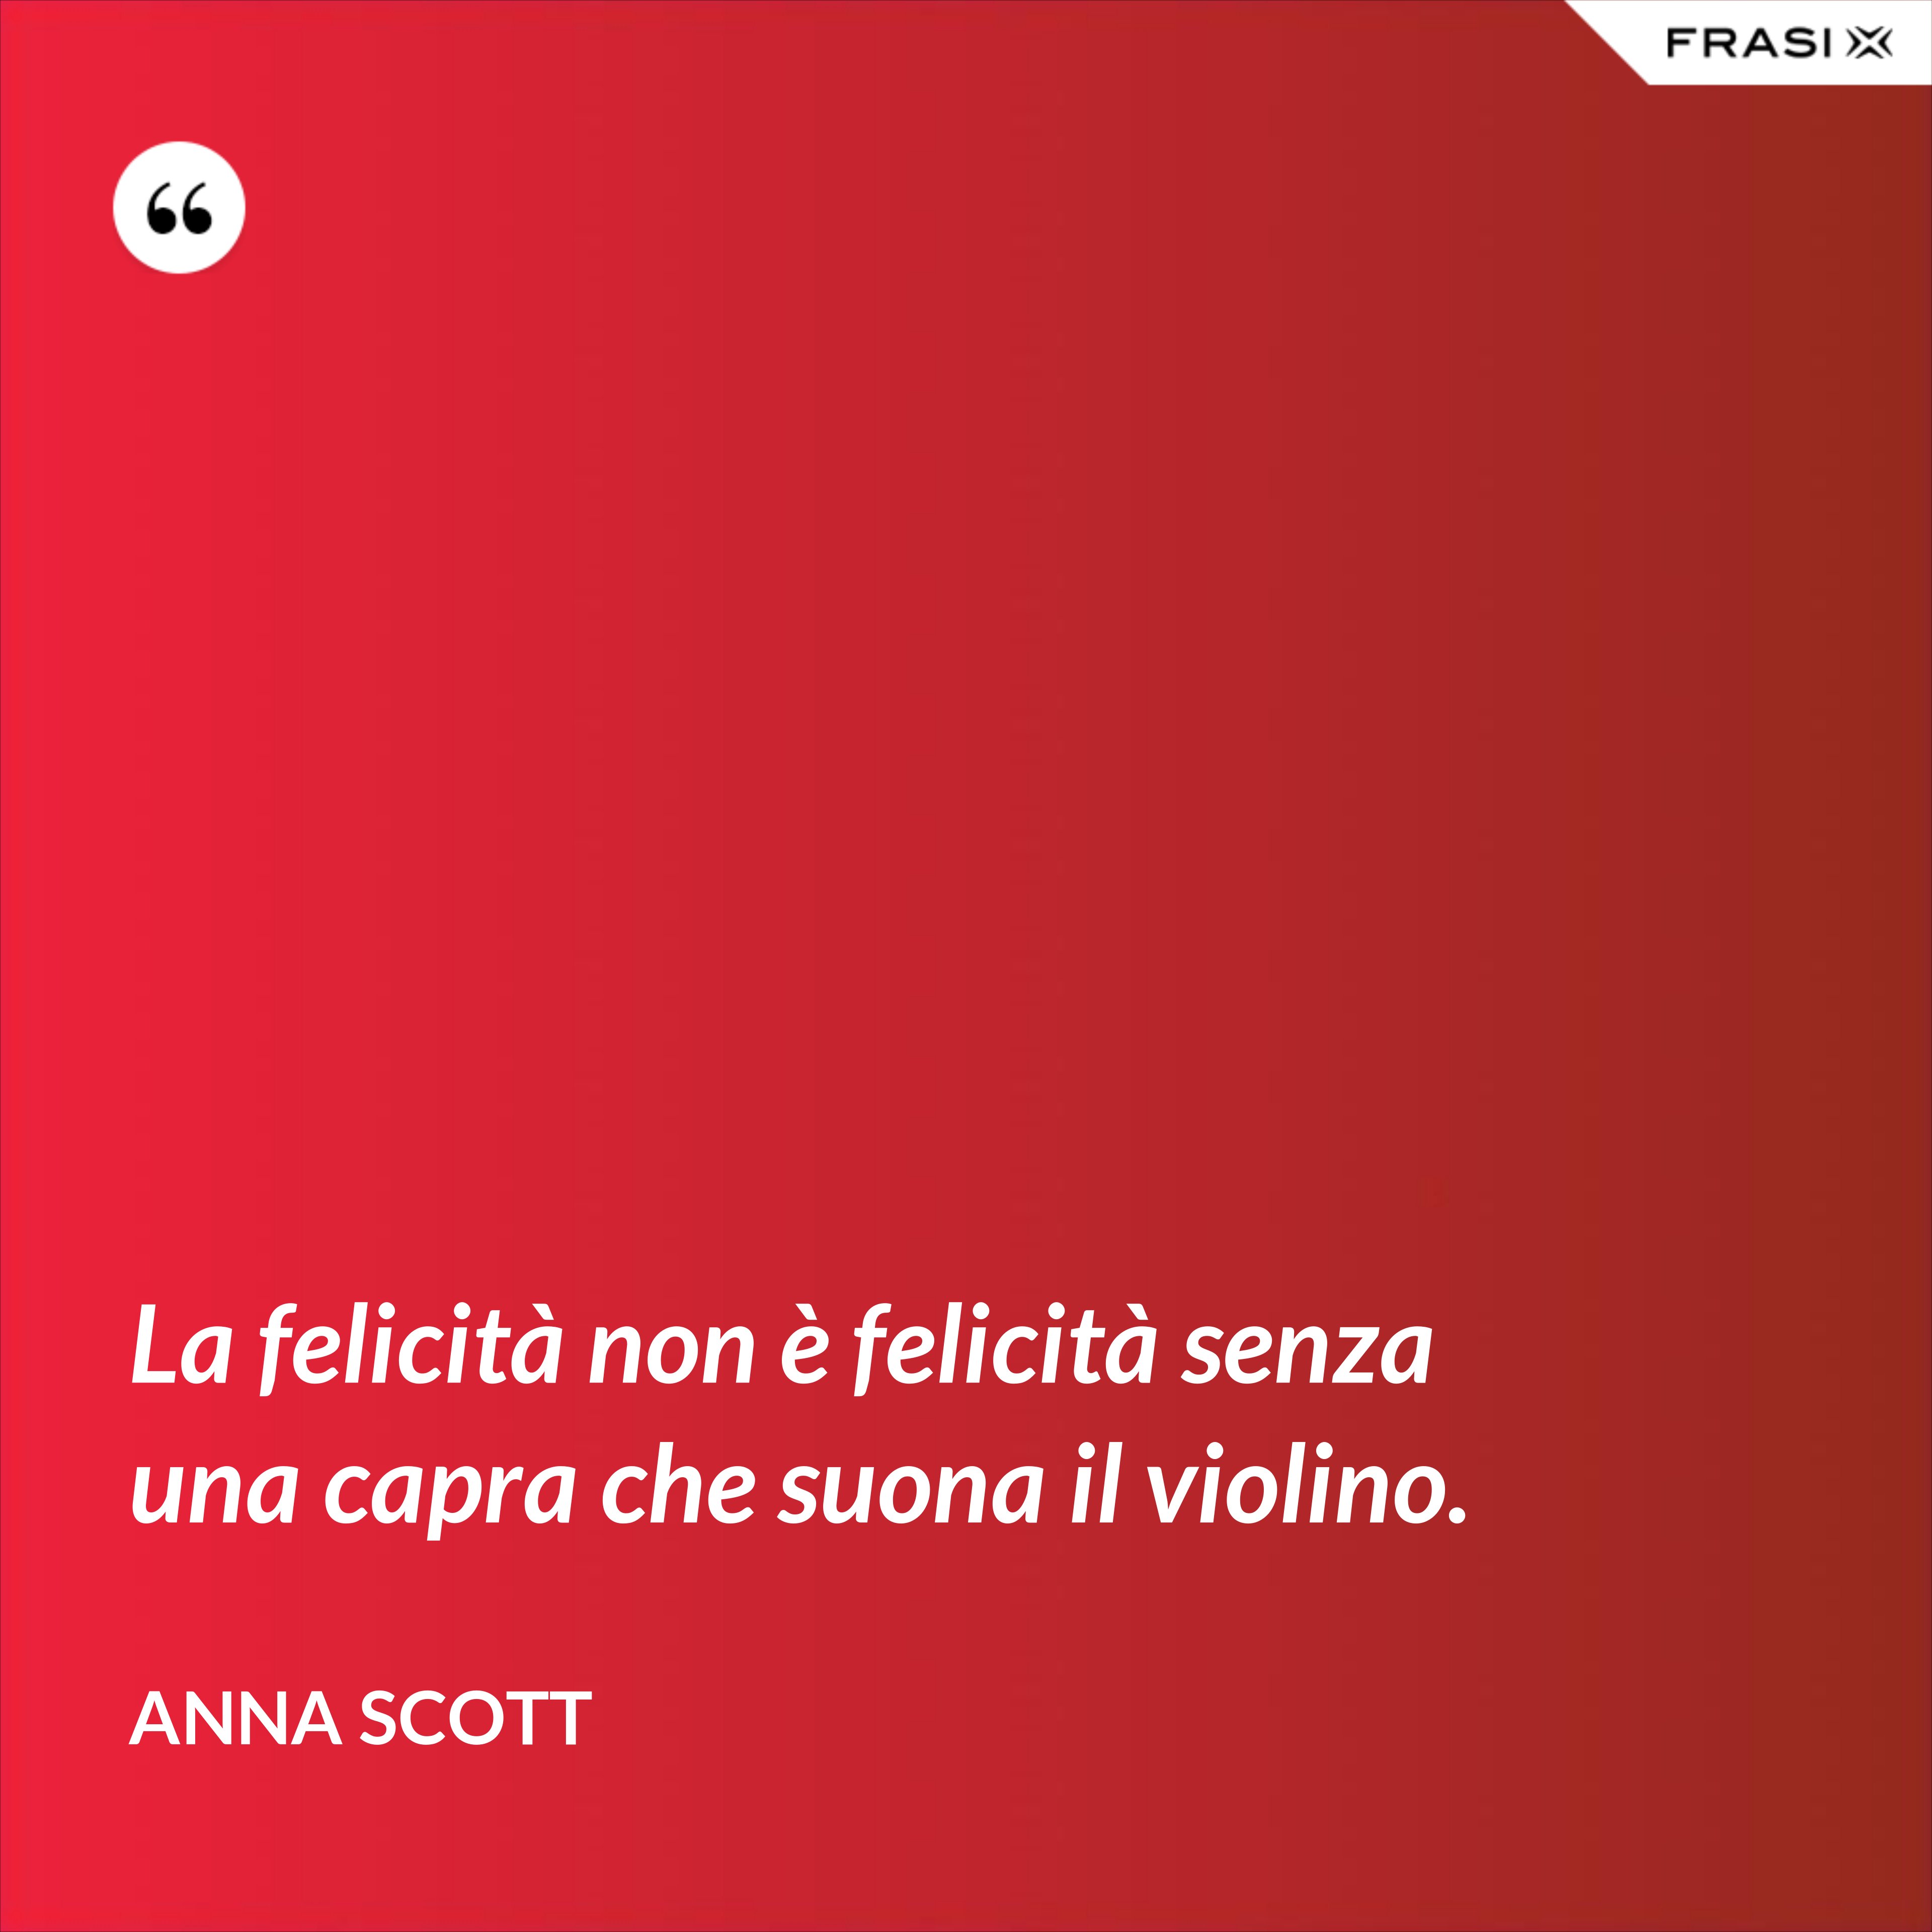 La felicità non è felicità senza una capra che suona il violino. - Anna Scott